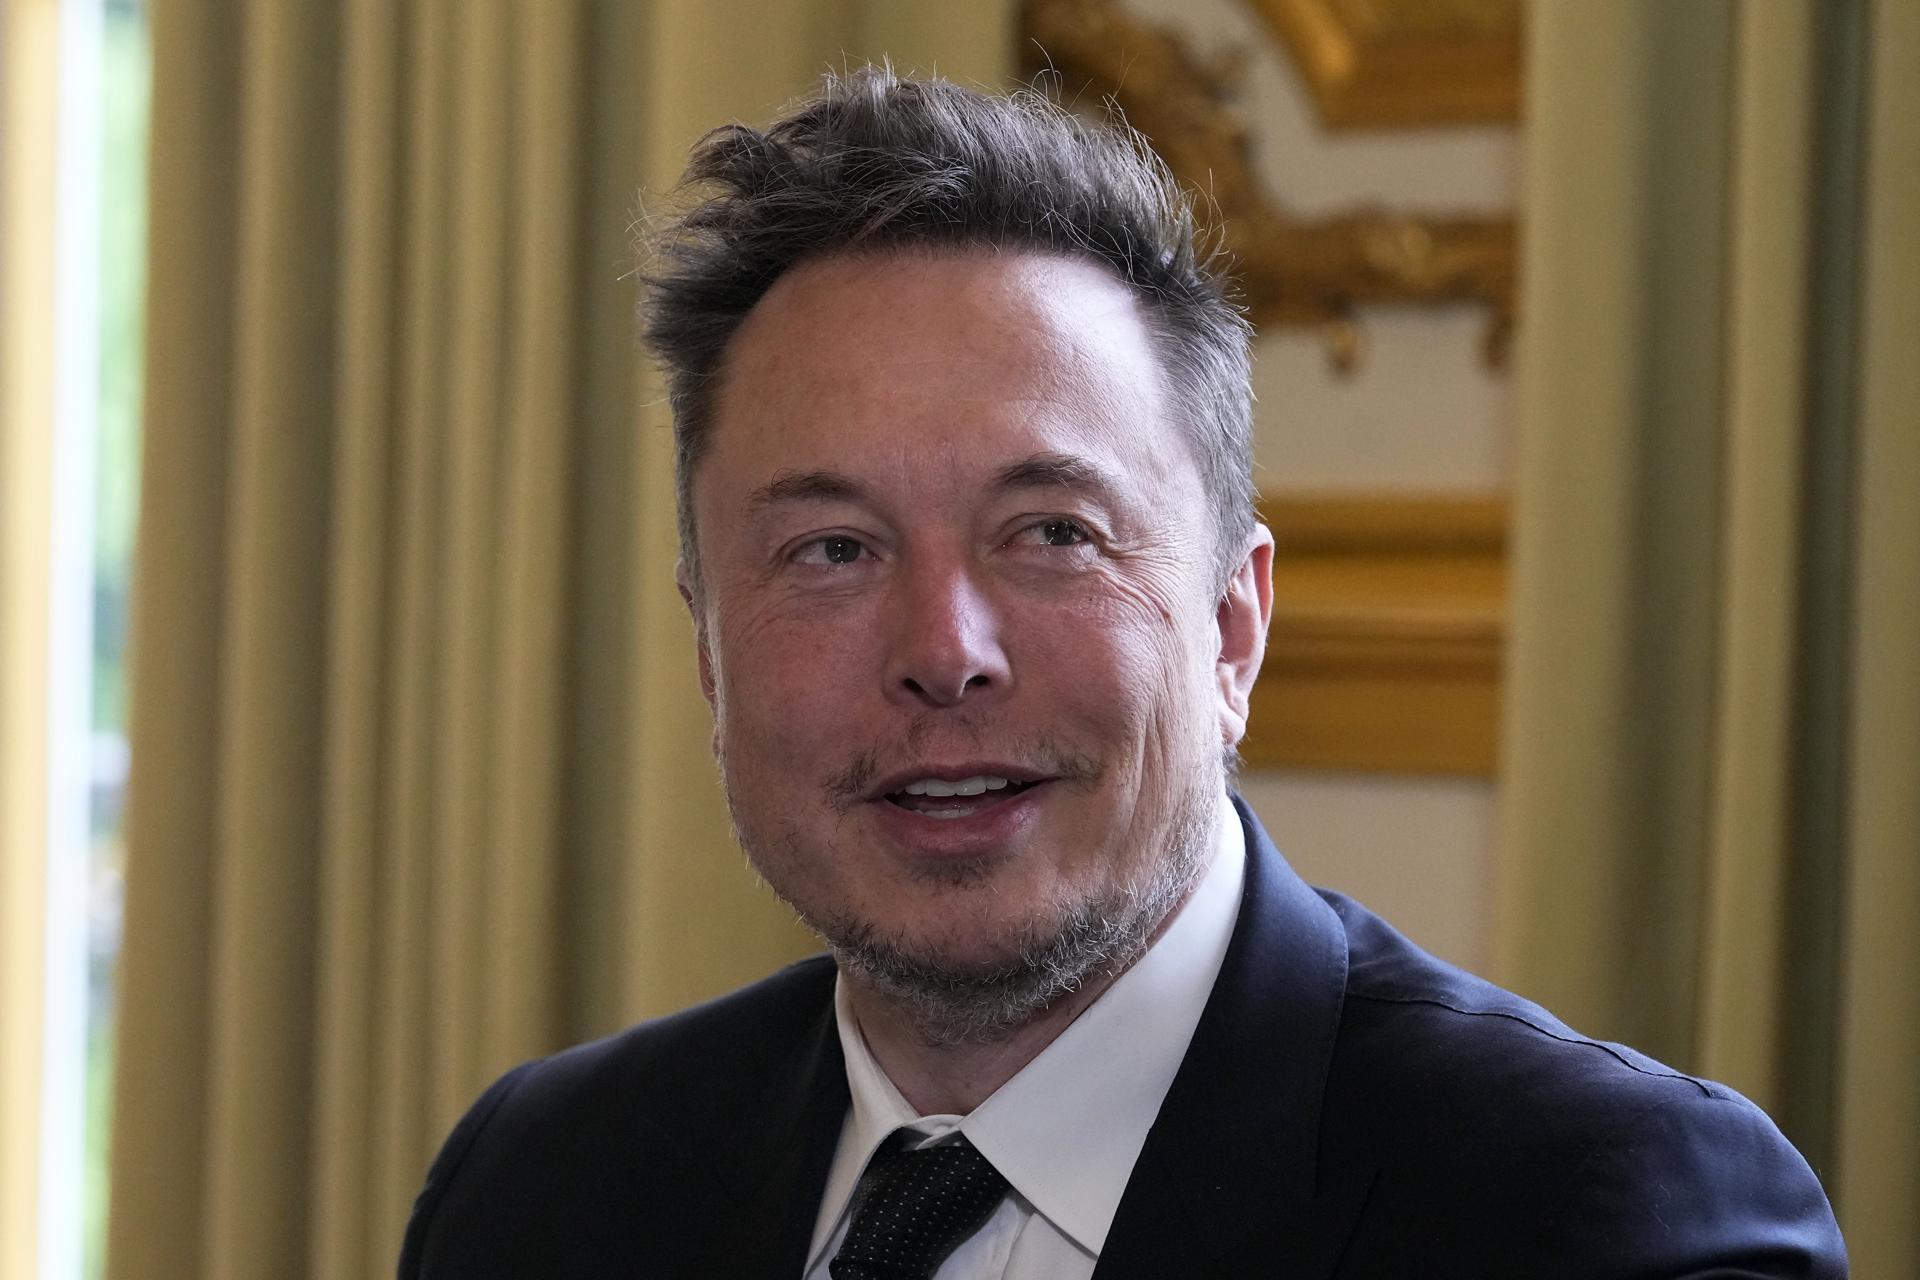 Musk advierte que el prefijo “cis” será considerado un insulto en Twitter